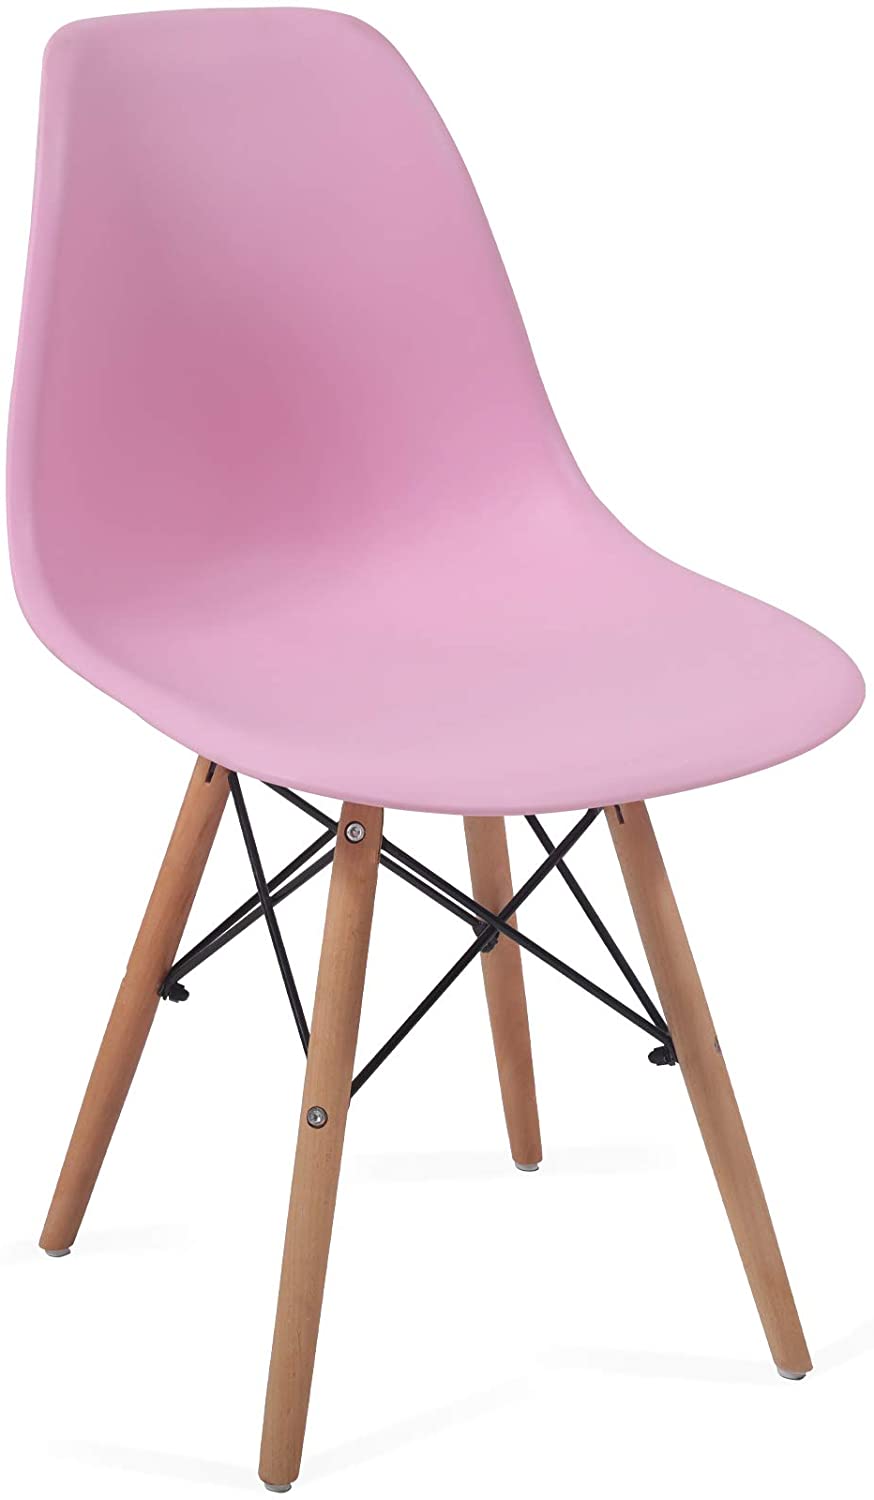 Eetkamerstoelen – Lounge stoelen – Scandinavische stijl – Retro – Vintage – Plastic – Set van 2 – Roze